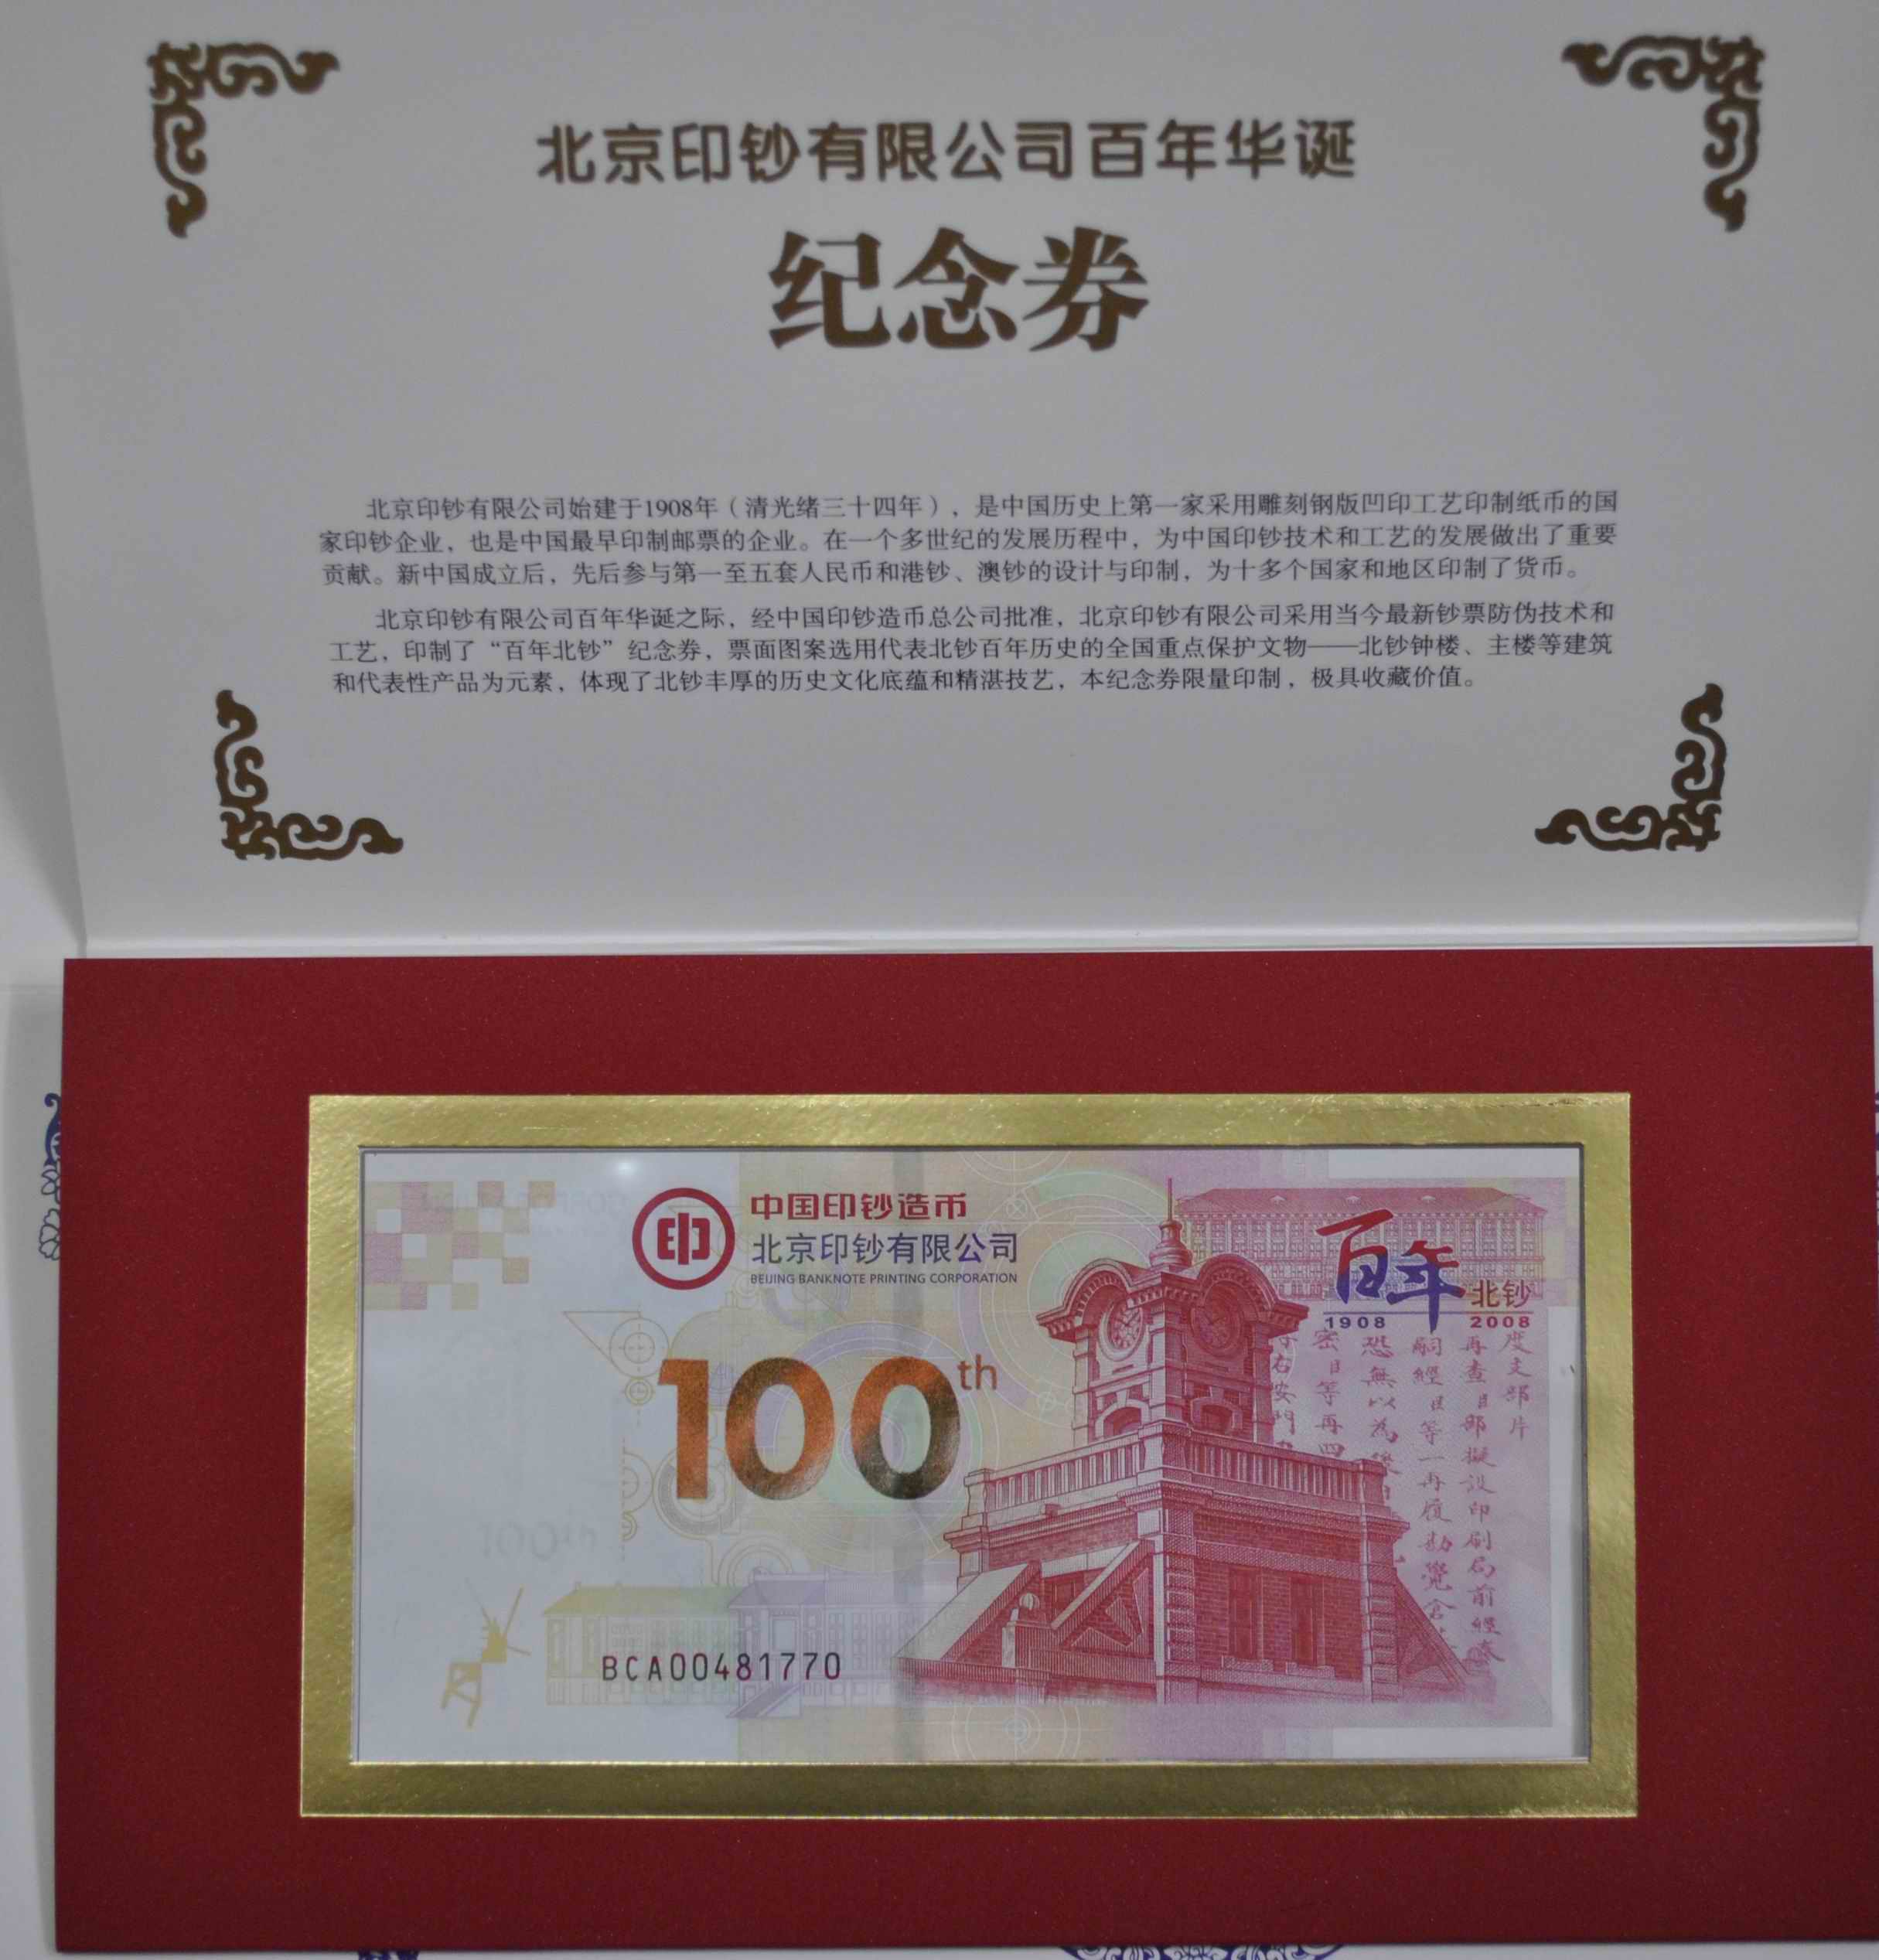 北京印钞厂百年华诞纪念卷 百年北钞测试钞 全新带册(大图展示)